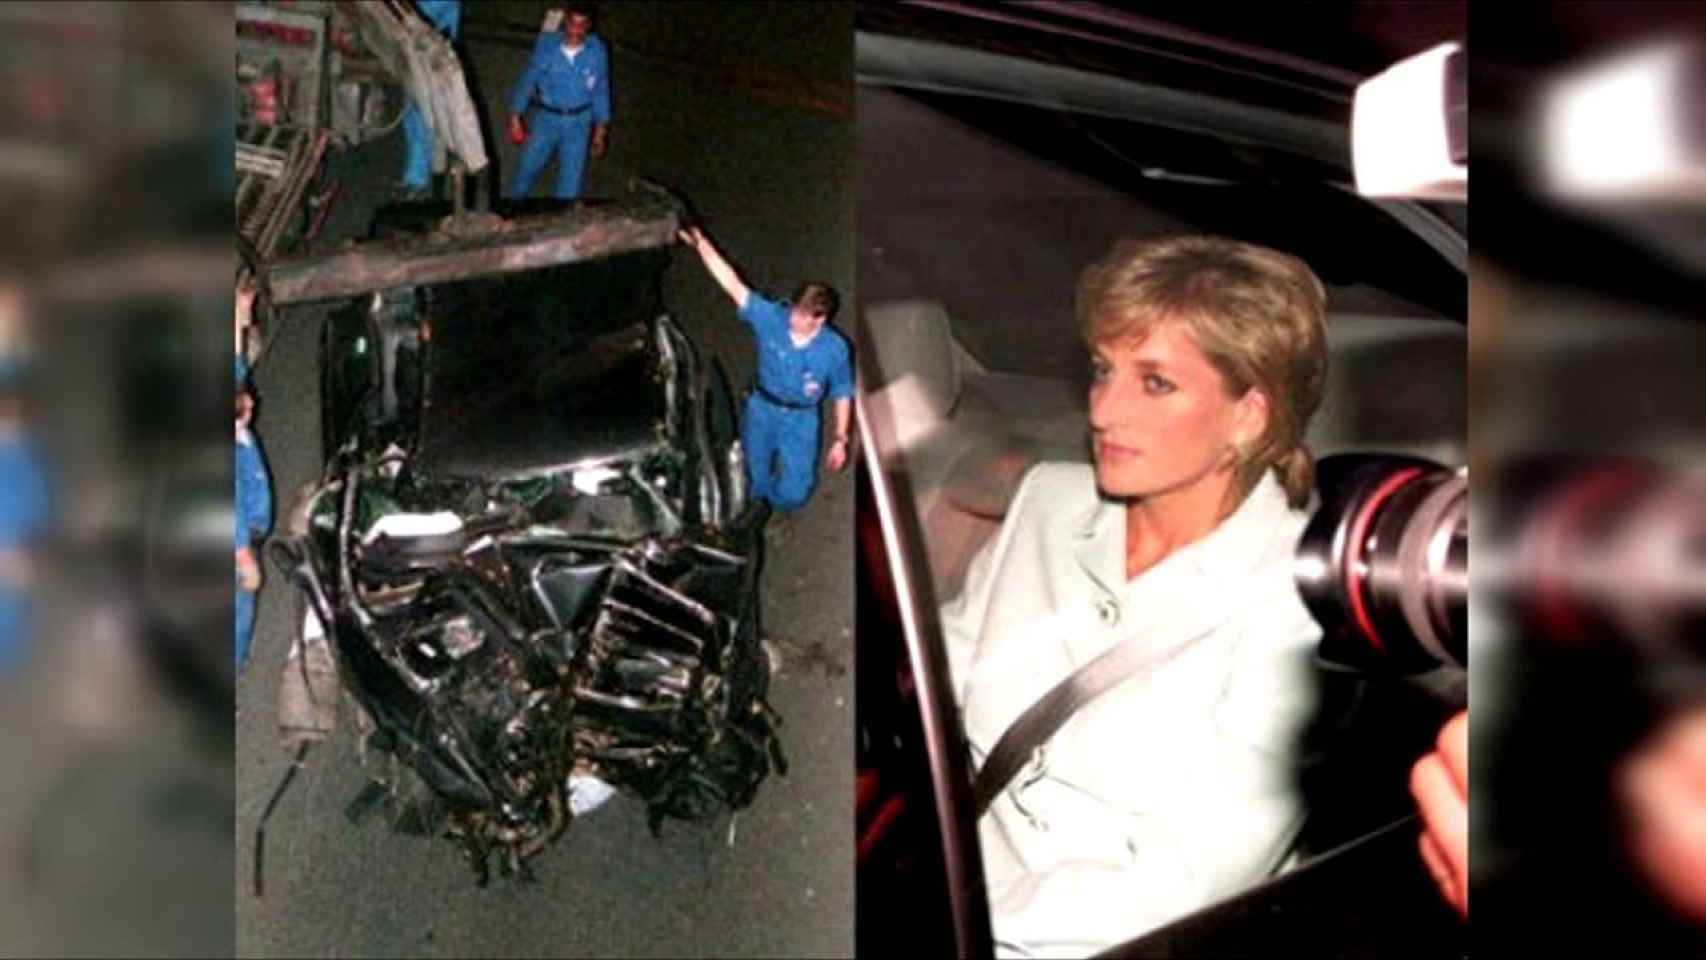 Diana de Gales sufrió un brutal accidente de coche el 31 de agosto de 1997 en París